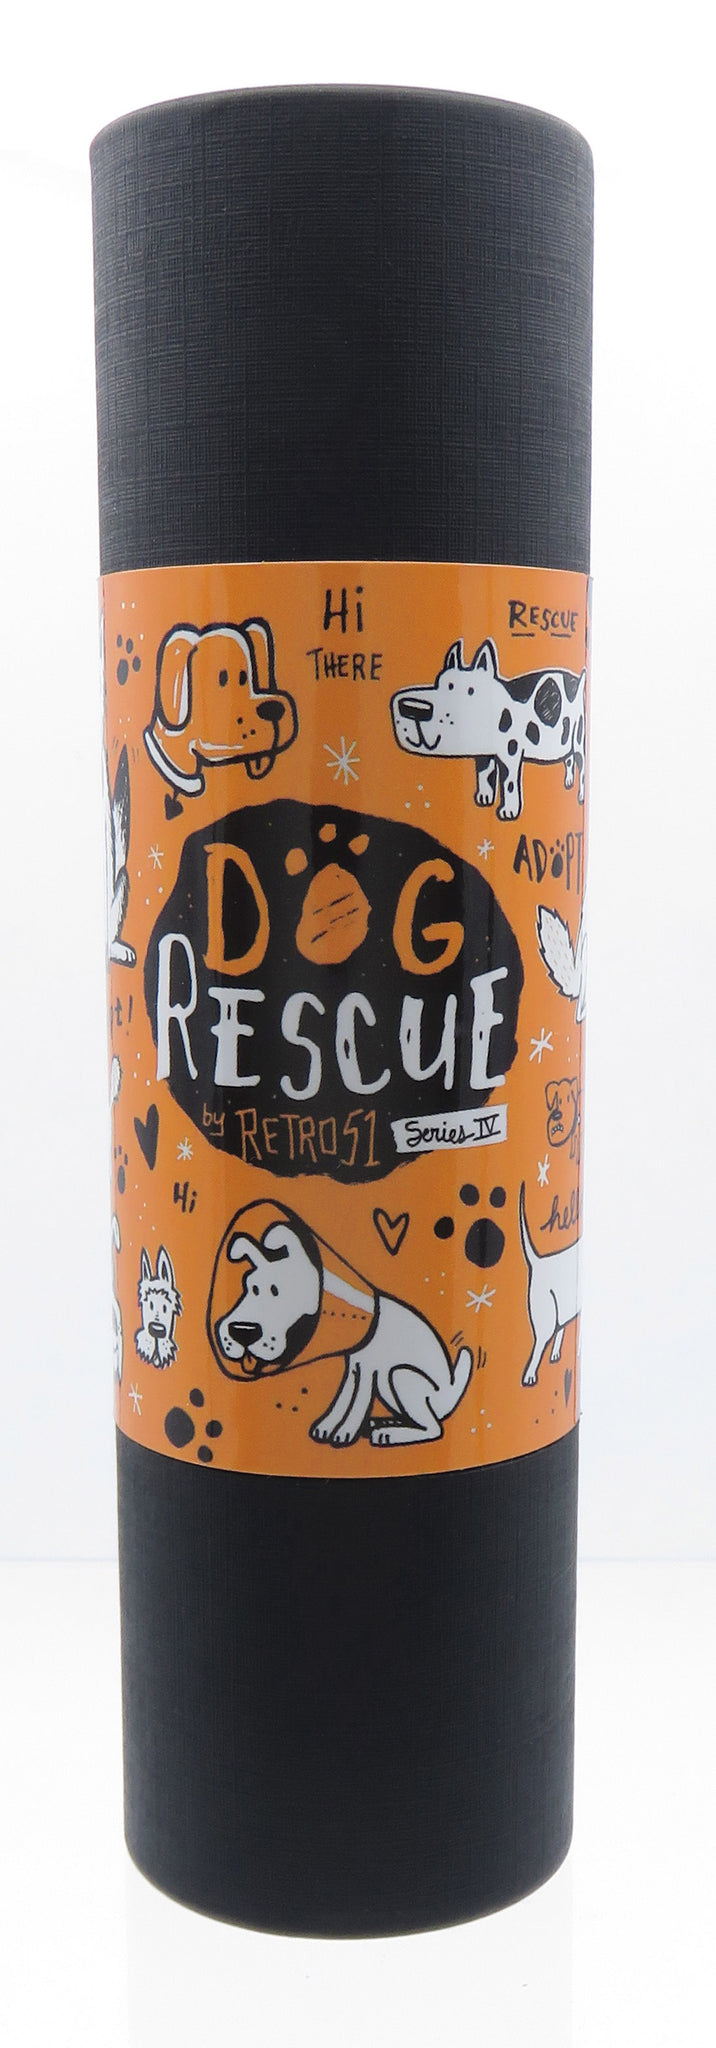 Retro '51 DOG Rescue, Series IV (BallPoint)